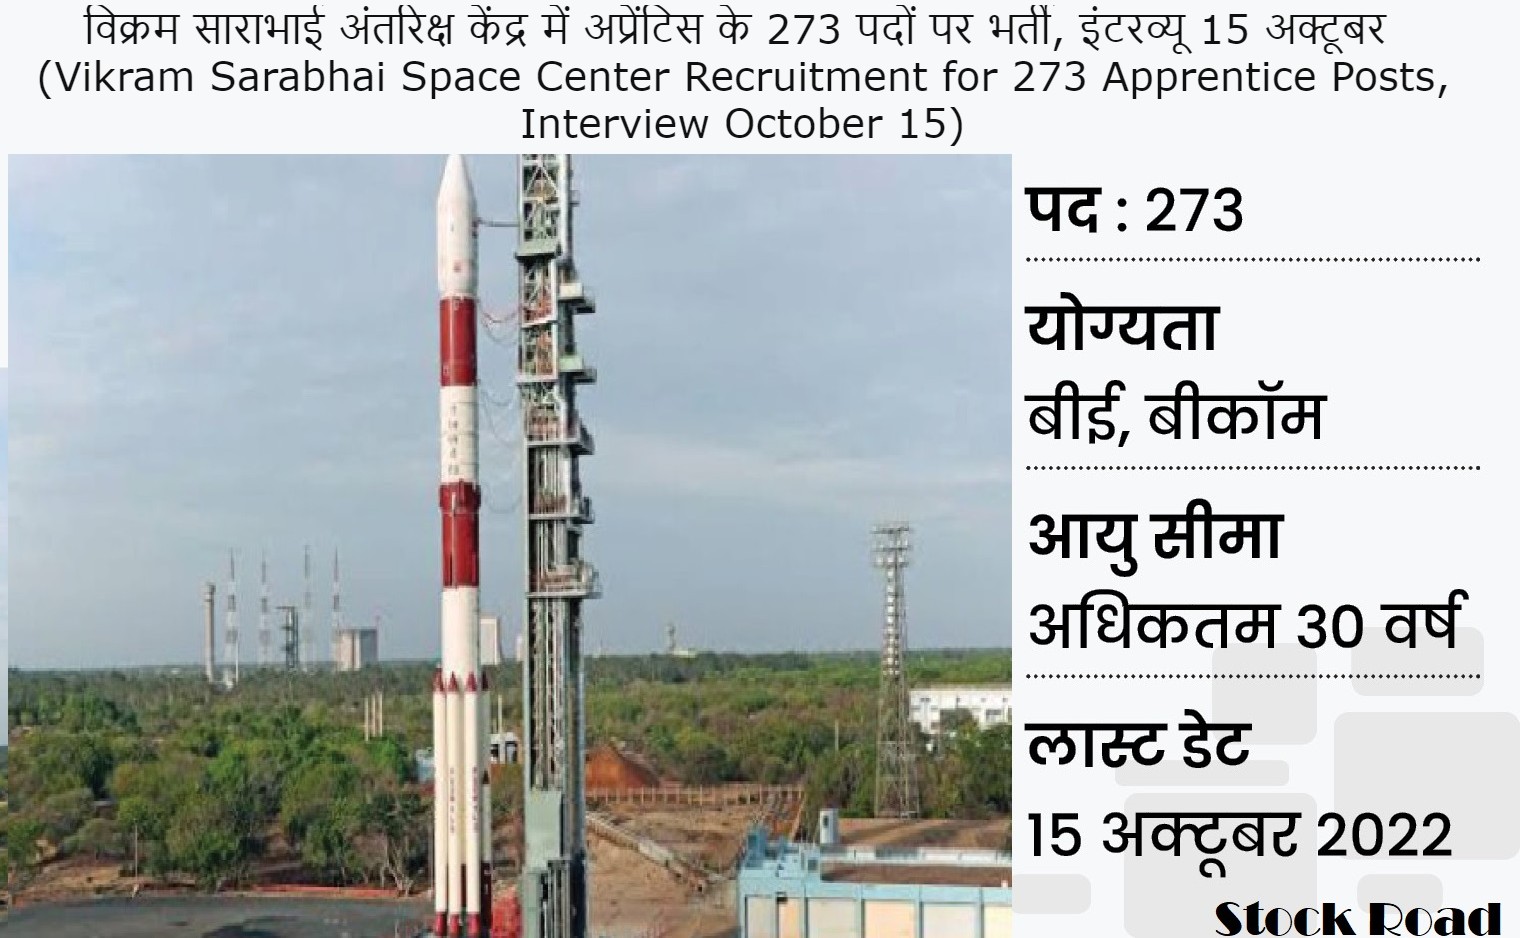 विक्रम साराभाई अंतरिक्ष केंद्र में अप्रेंटिस के 273 पदों पर भर्ती, इंटरव्यू 15 अक्टूबर  (Vikram Sarabhai Space Center Recruitment for 273 Apprentice Posts, Interview October 15)